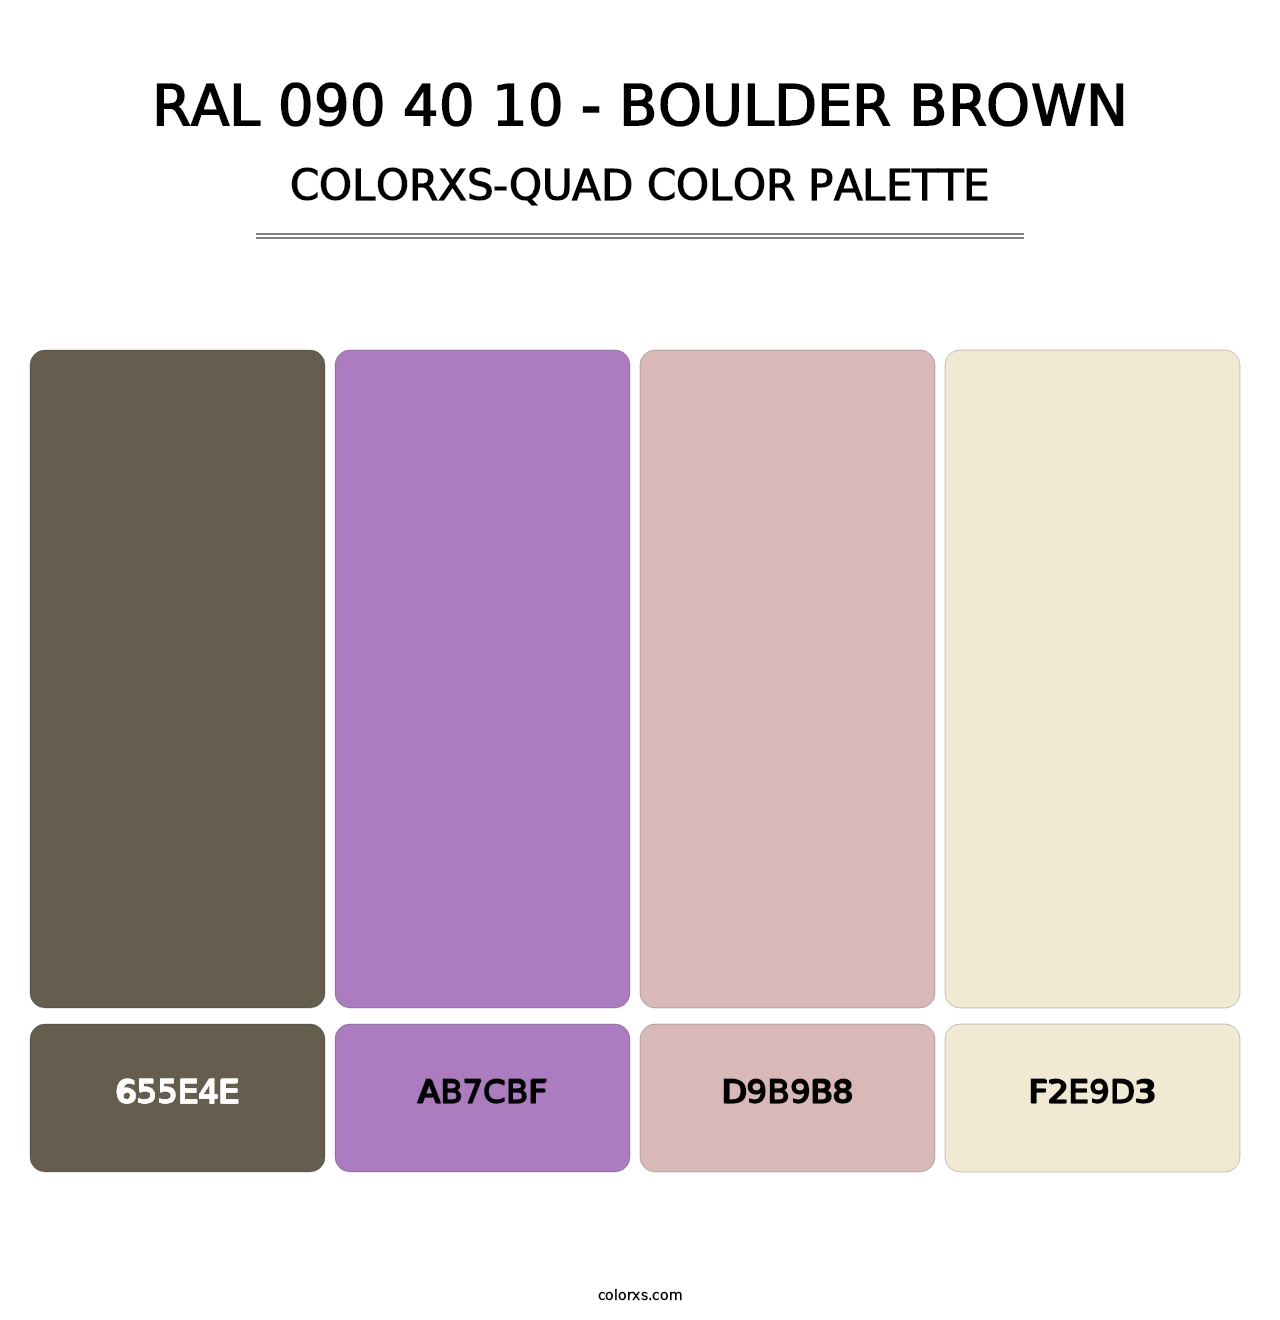 RAL 090 40 10 - Boulder Brown - Colorxs Quad Palette